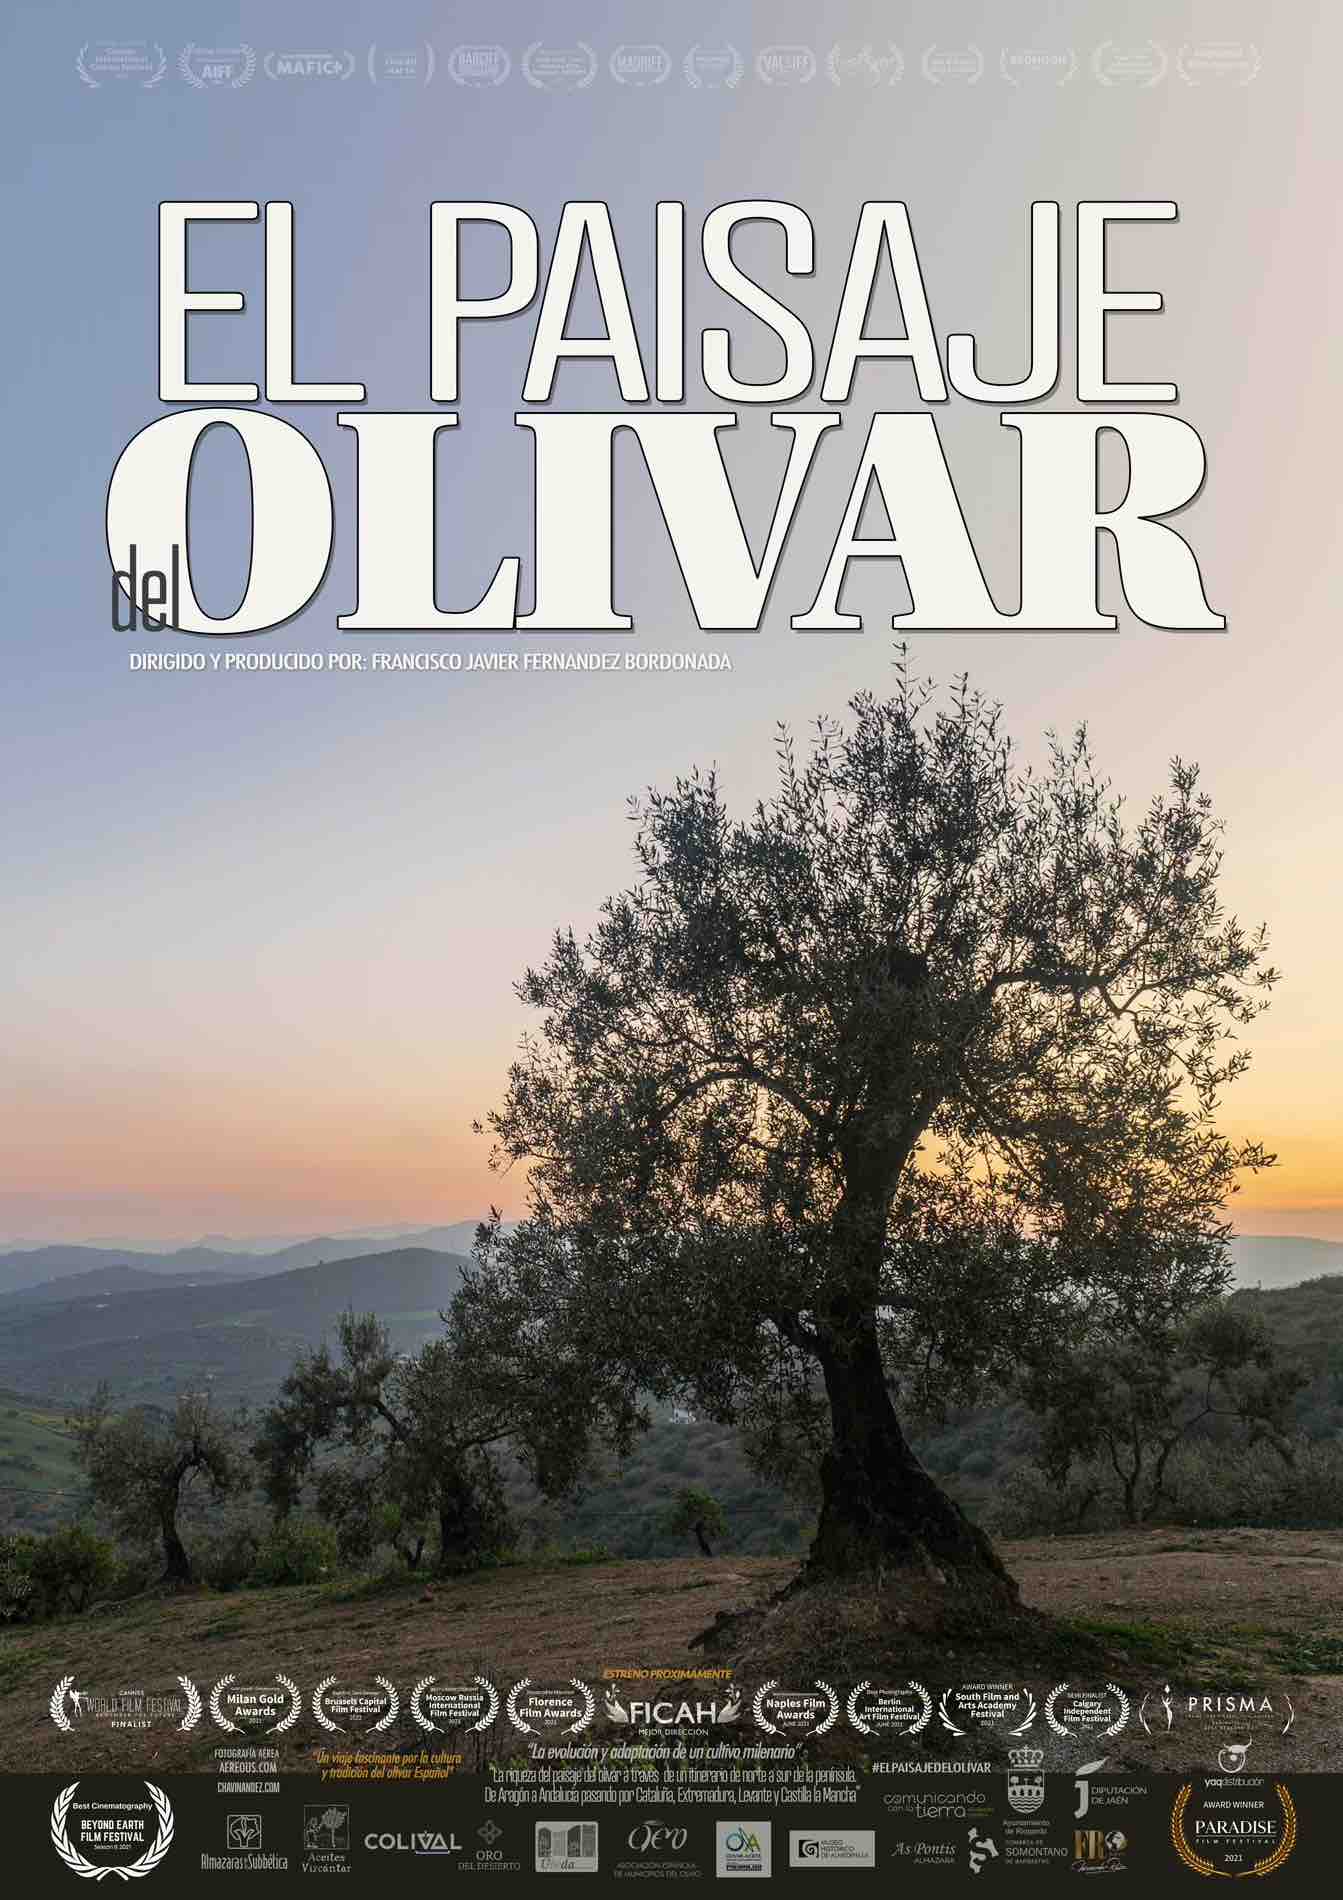 El_paisaje_del_olivar